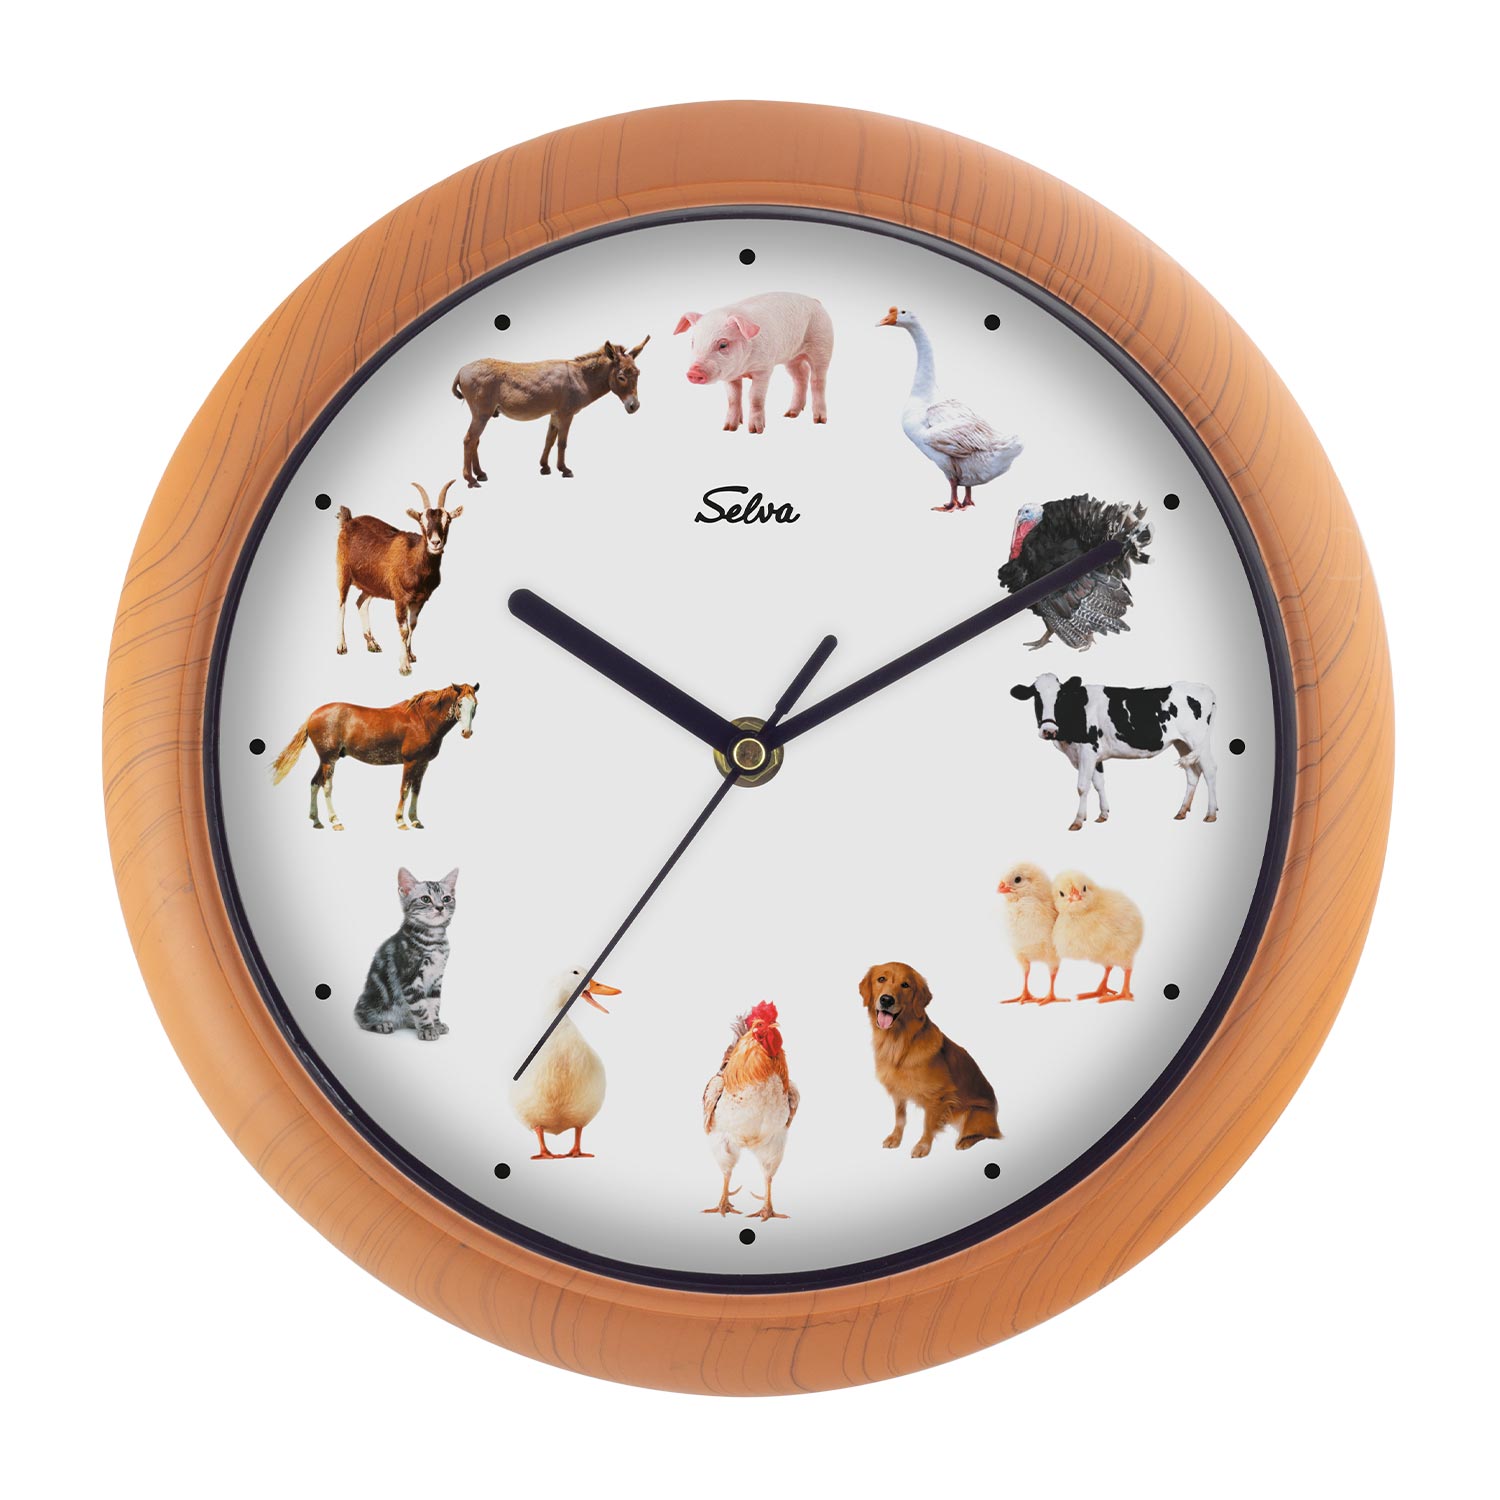 SELVA Farm clock at Selva Online